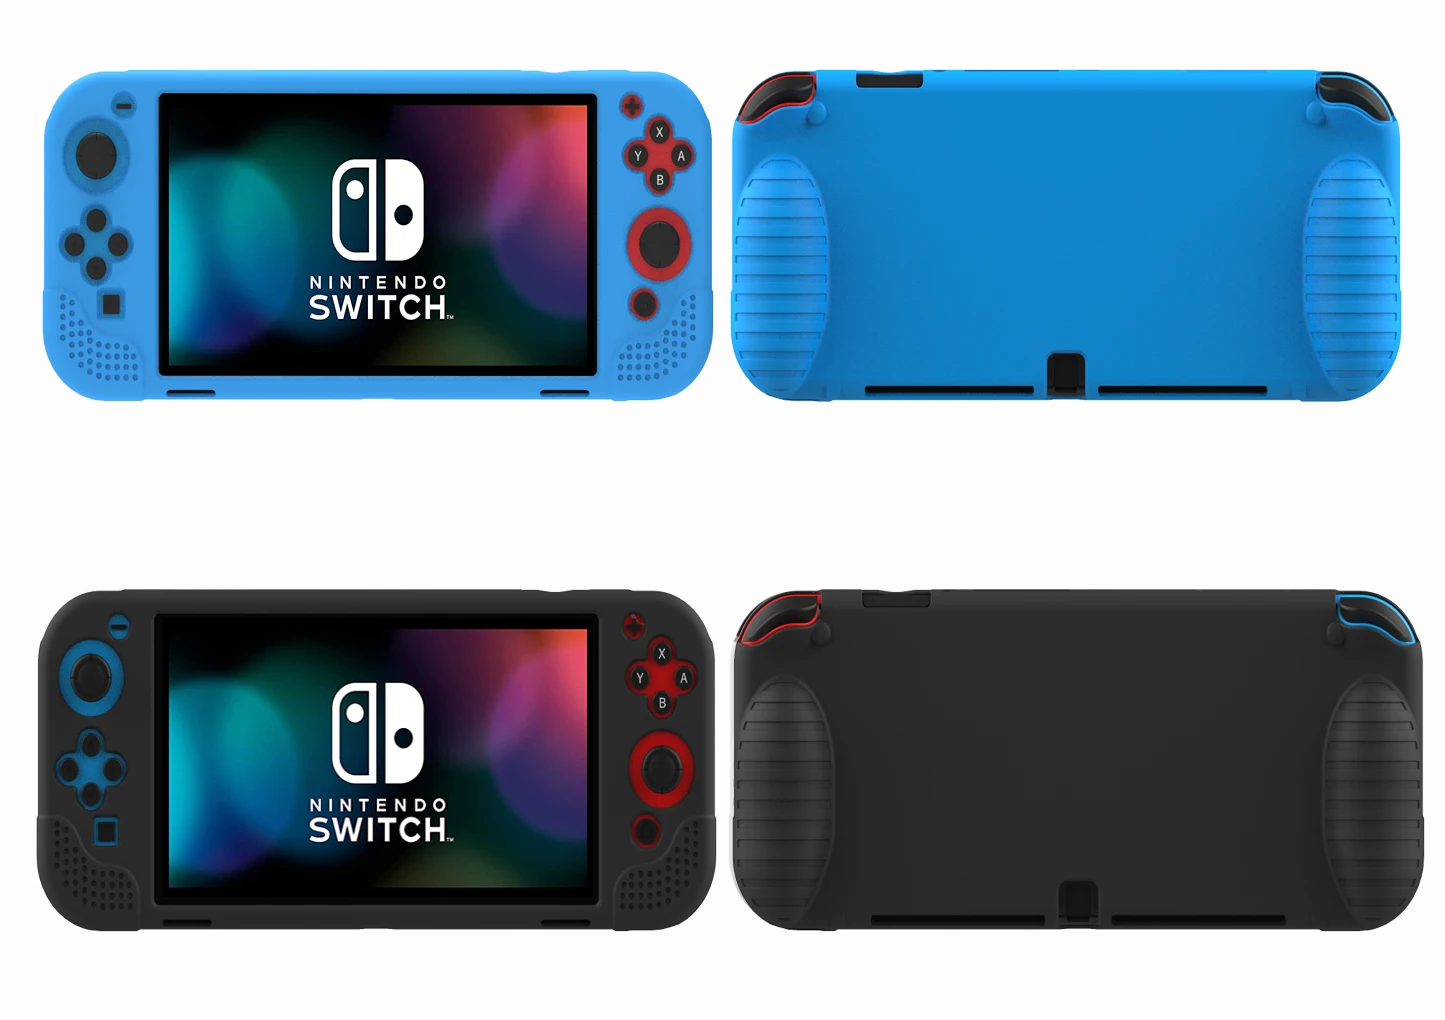 Силиконовый защитный чехол HOXC Skintouch для консоли Nintendo Switch OLED, силиконовый защитный чехол, эргономичный ЧЕХОЛ ДЛЯ NS Pro